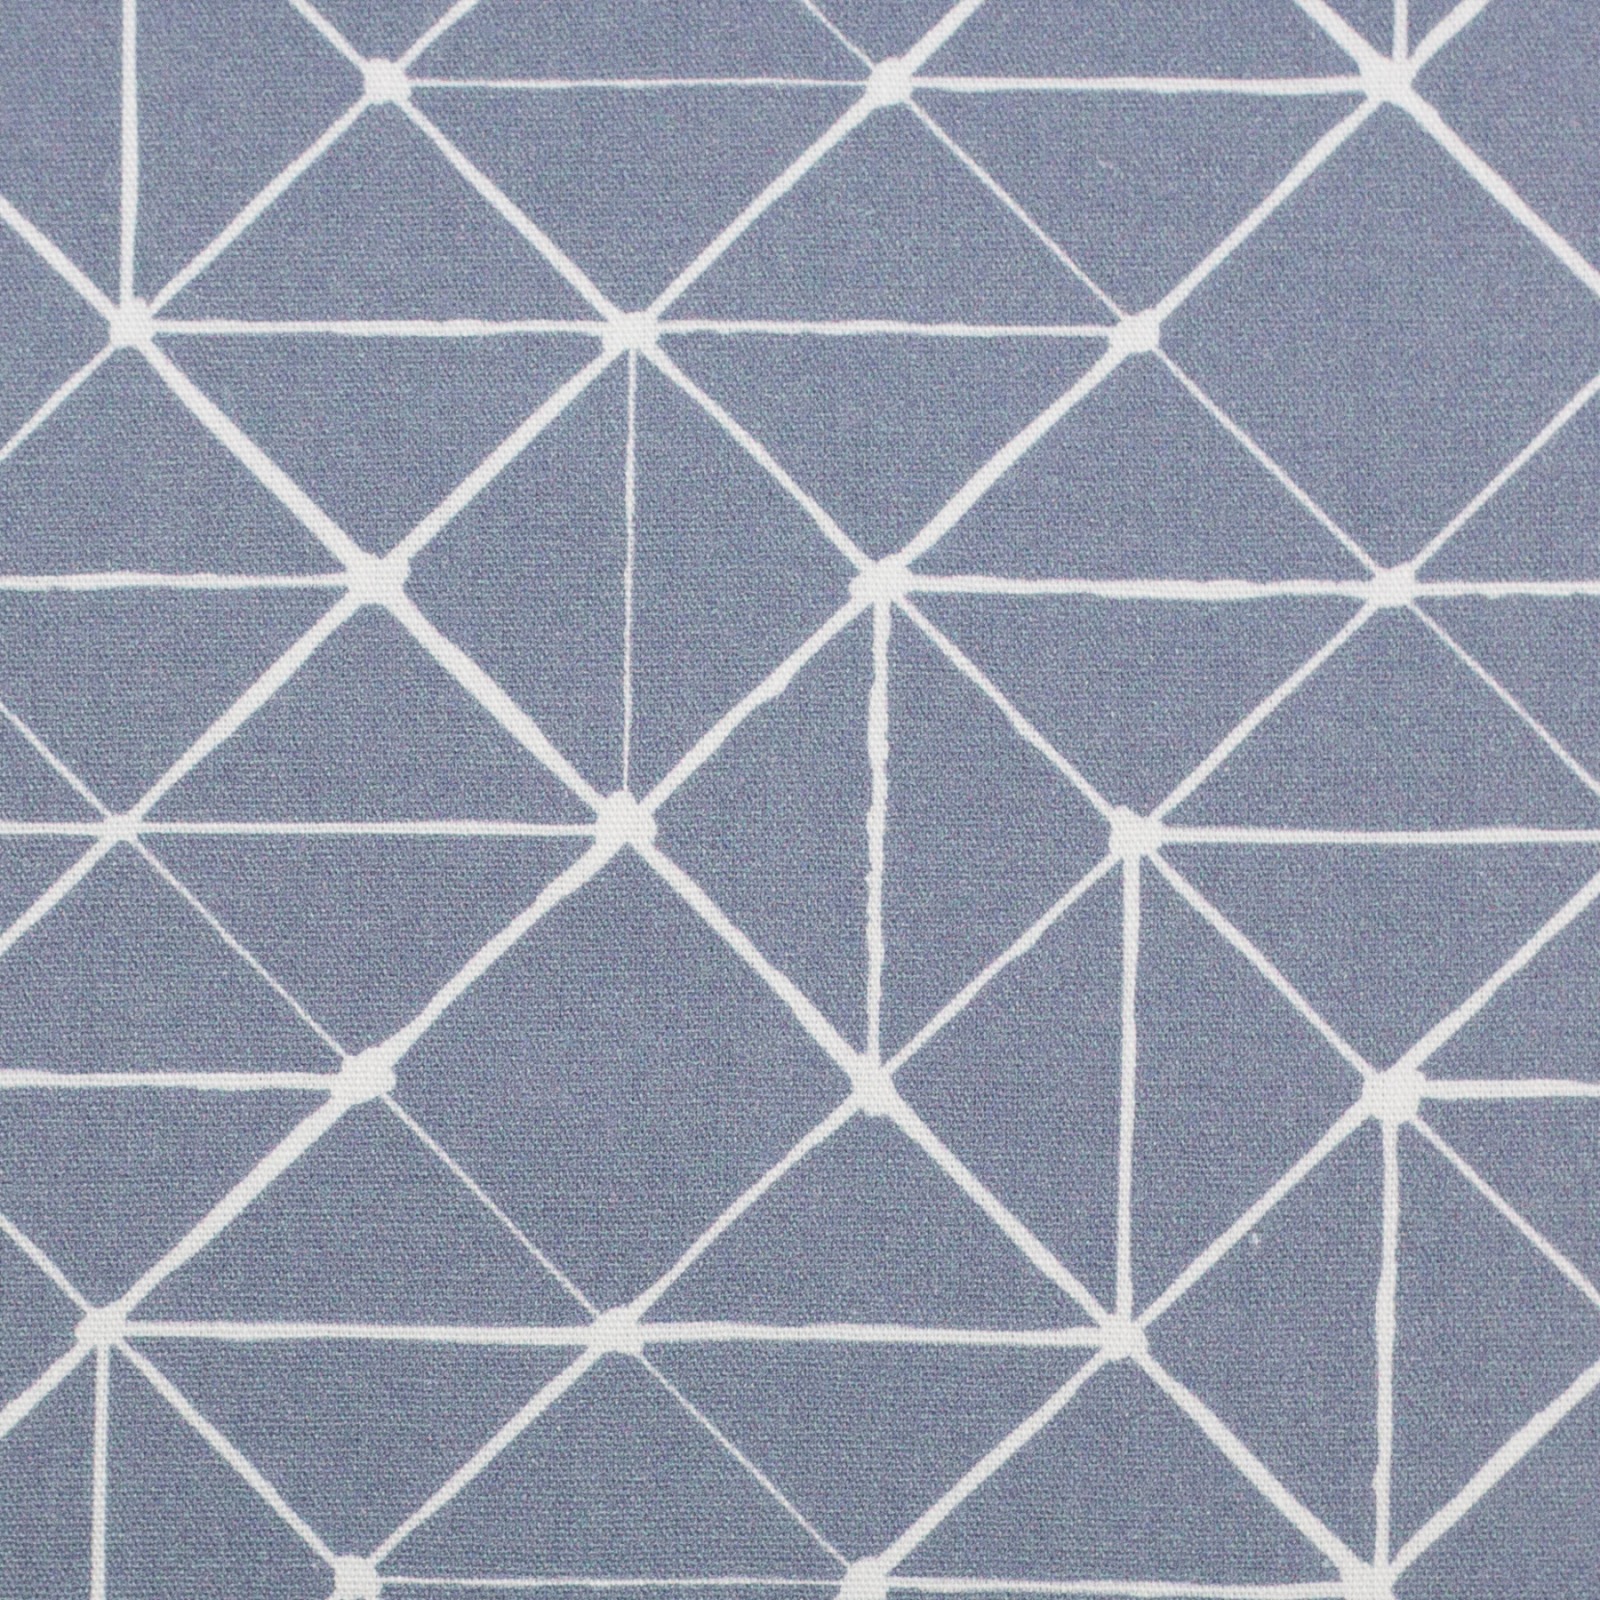 Baumwolle 960 EUR/m geometrische Linien rauchblau weiß Baumwollstoff Kurt Swafing Stoffe Meterware